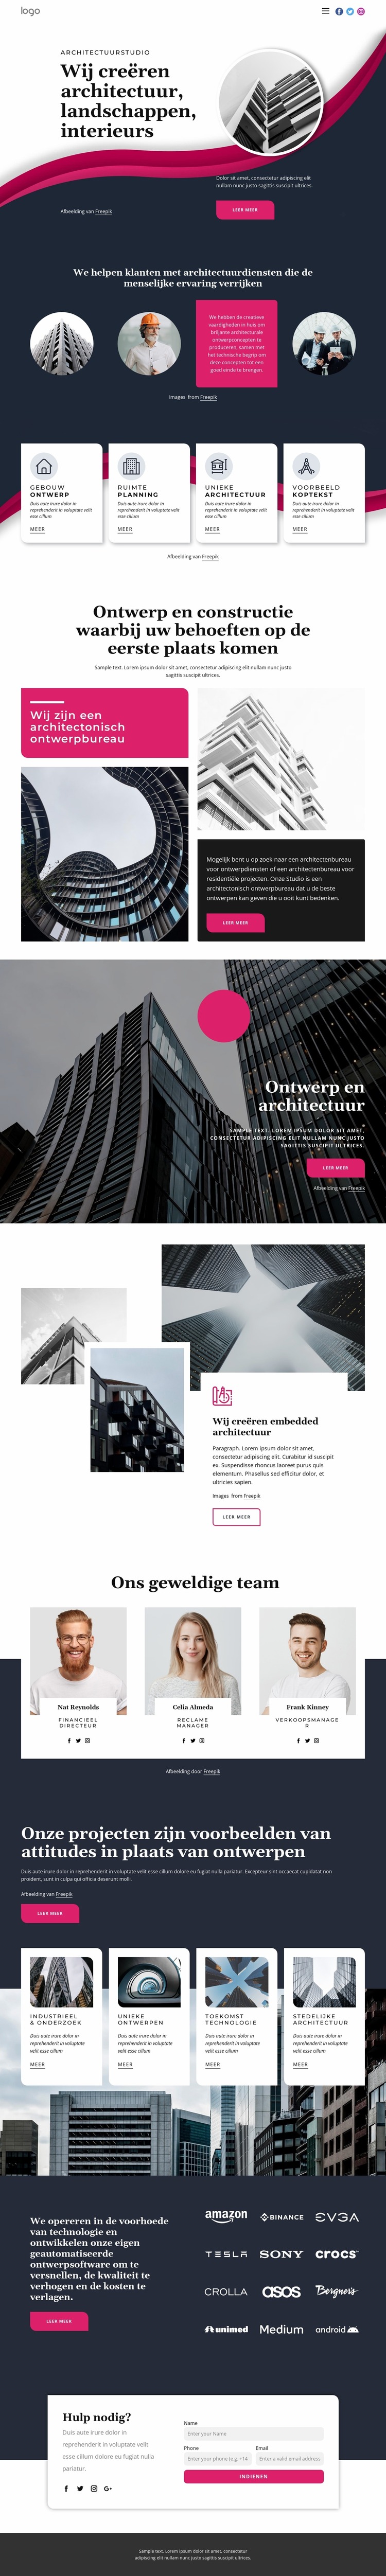 Wij creëren geweldige architectuur Joomla-sjabloon